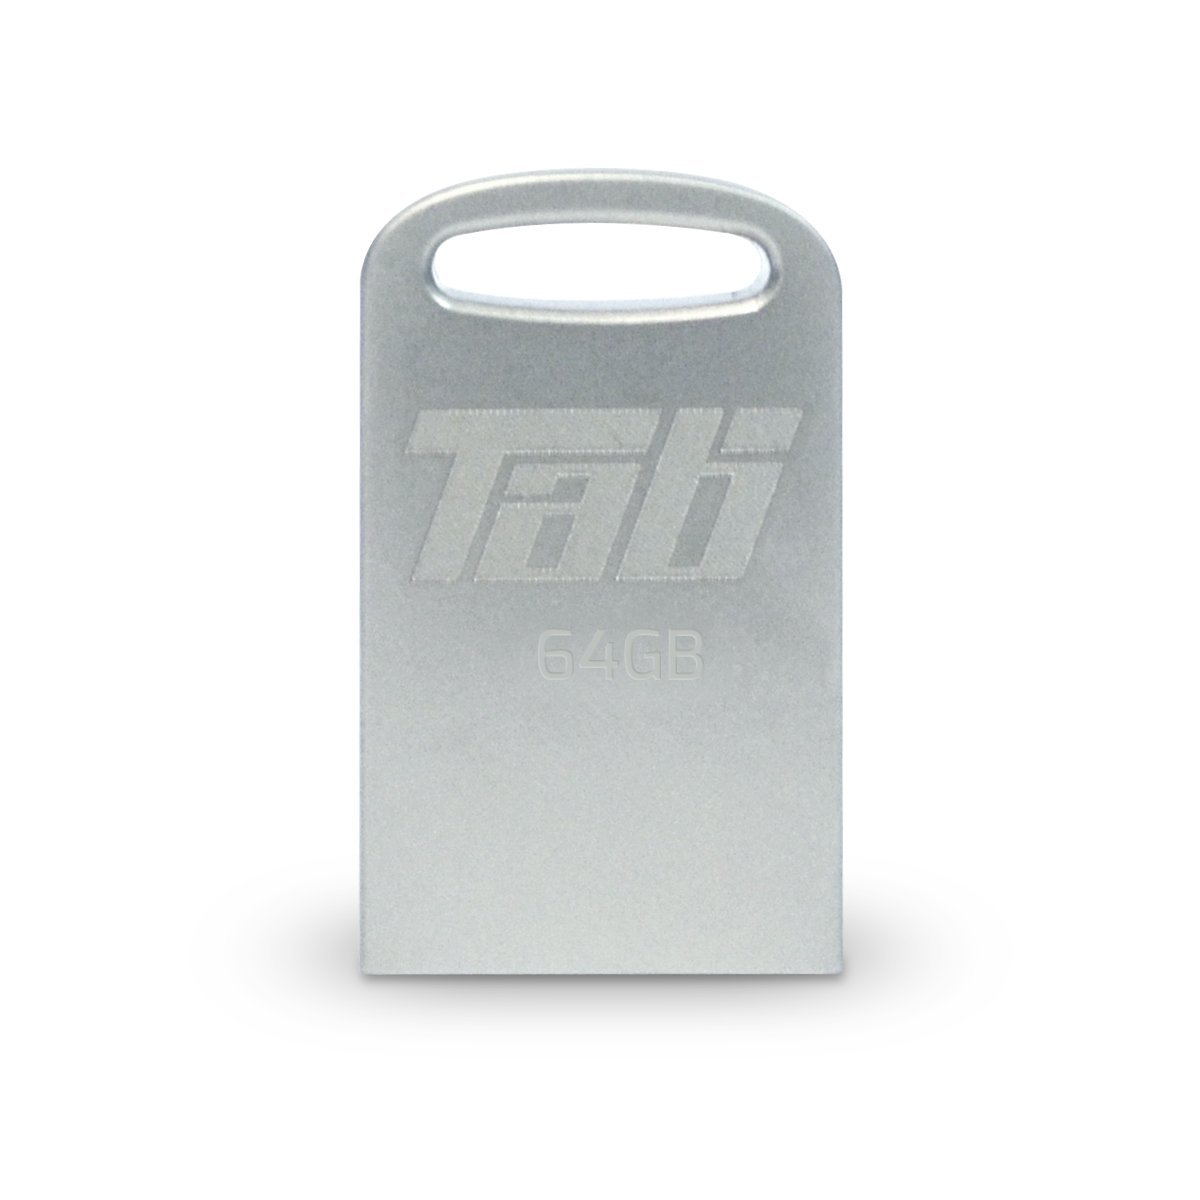 Patriot Tab USB 3.0 64GB Flash Drive